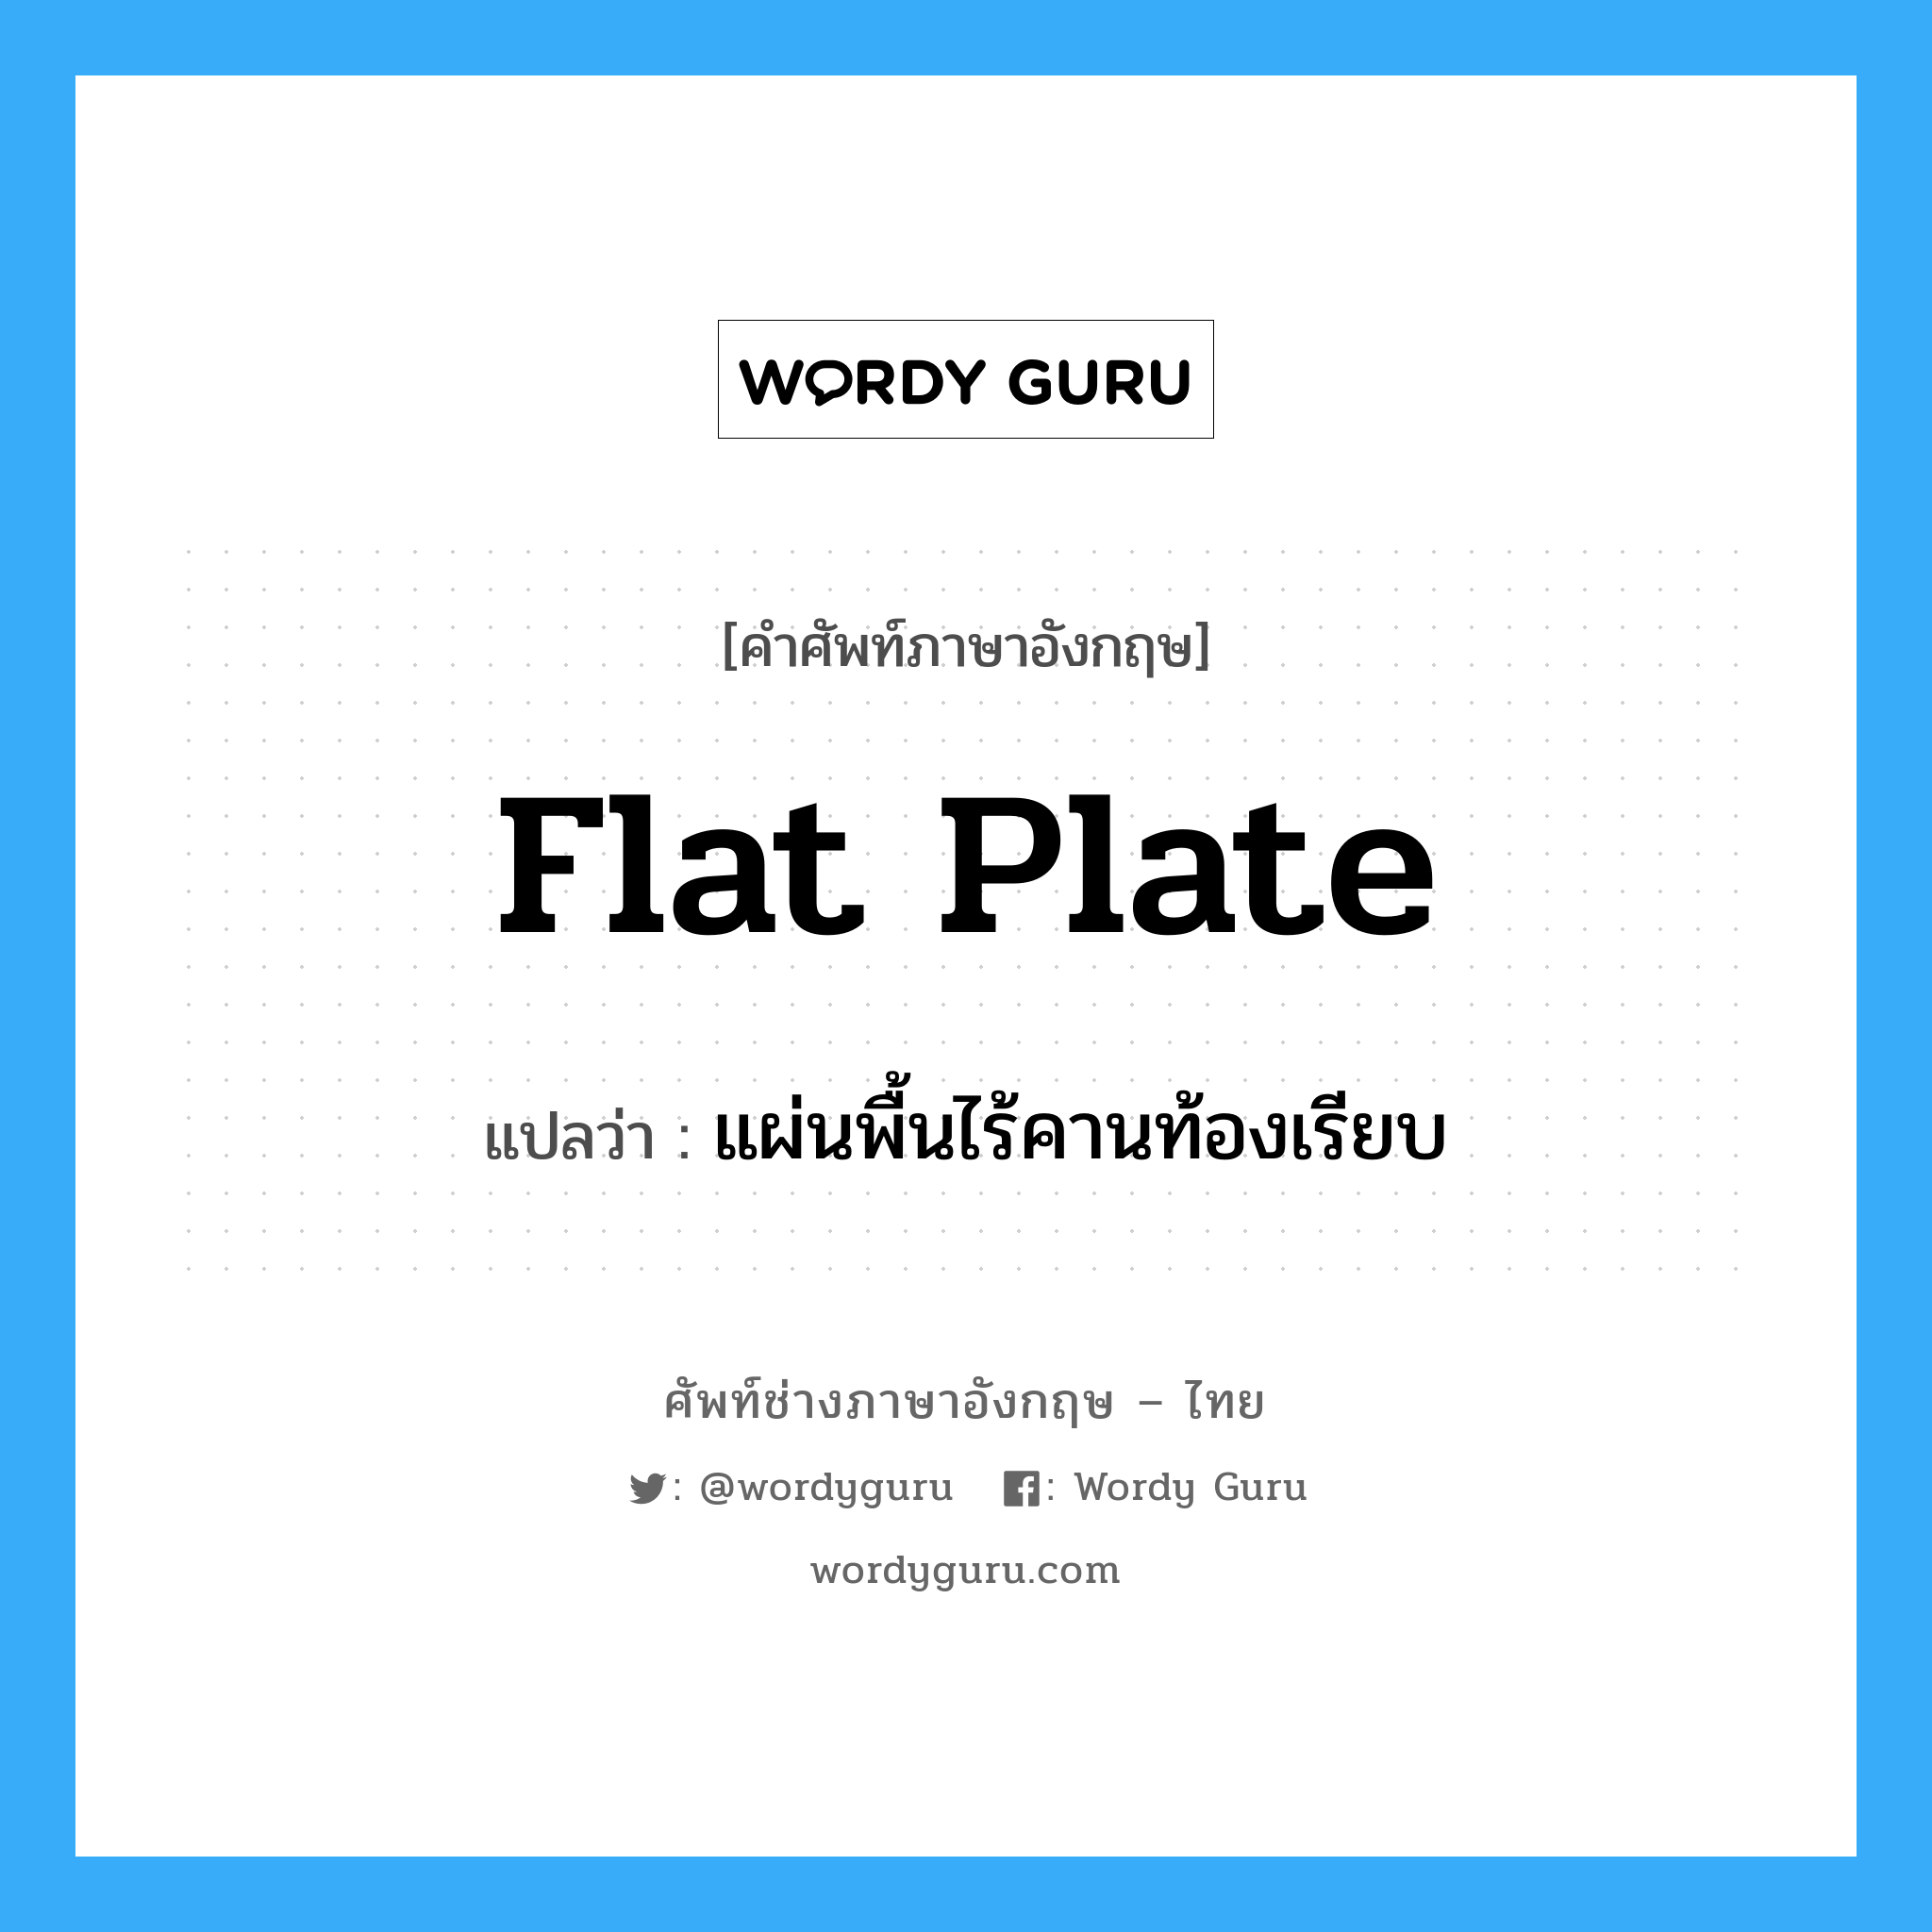 flat plate แปลว่า?, คำศัพท์ช่างภาษาอังกฤษ - ไทย flat plate คำศัพท์ภาษาอังกฤษ flat plate แปลว่า แผ่นพื้นไร้คานท้องเรียบ